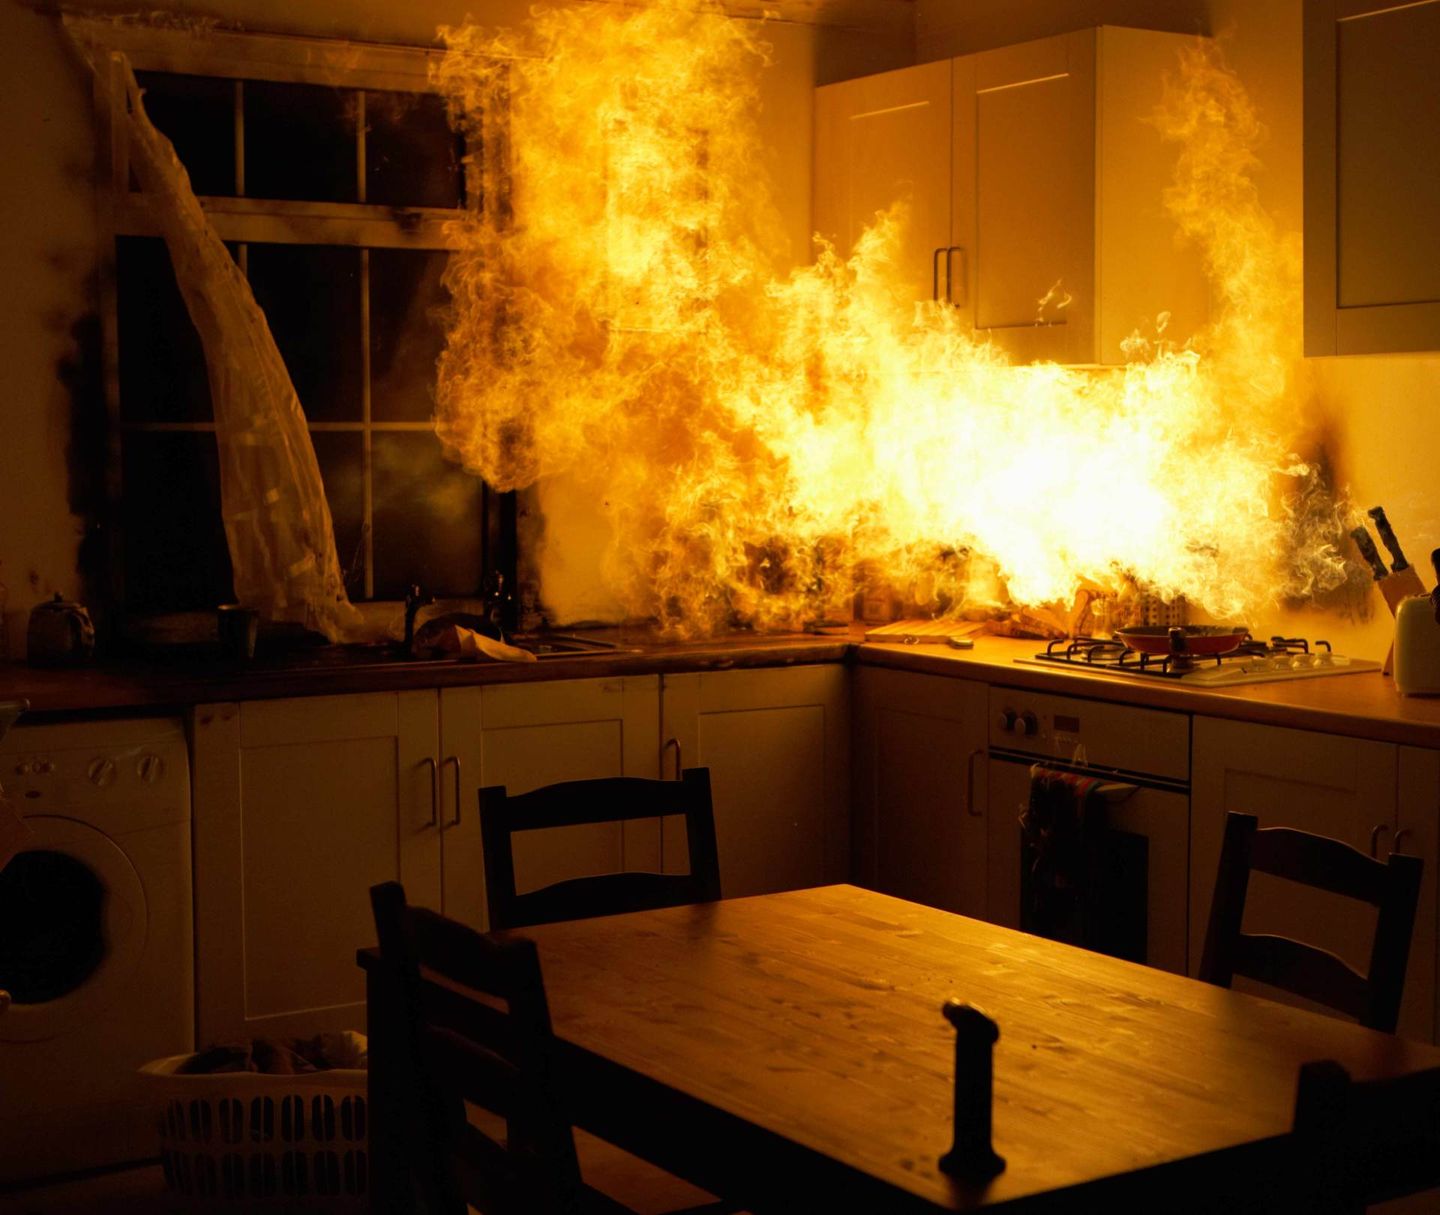 Fire Raging in Kitchen — Benton, KY — Premier Disaster Restoration